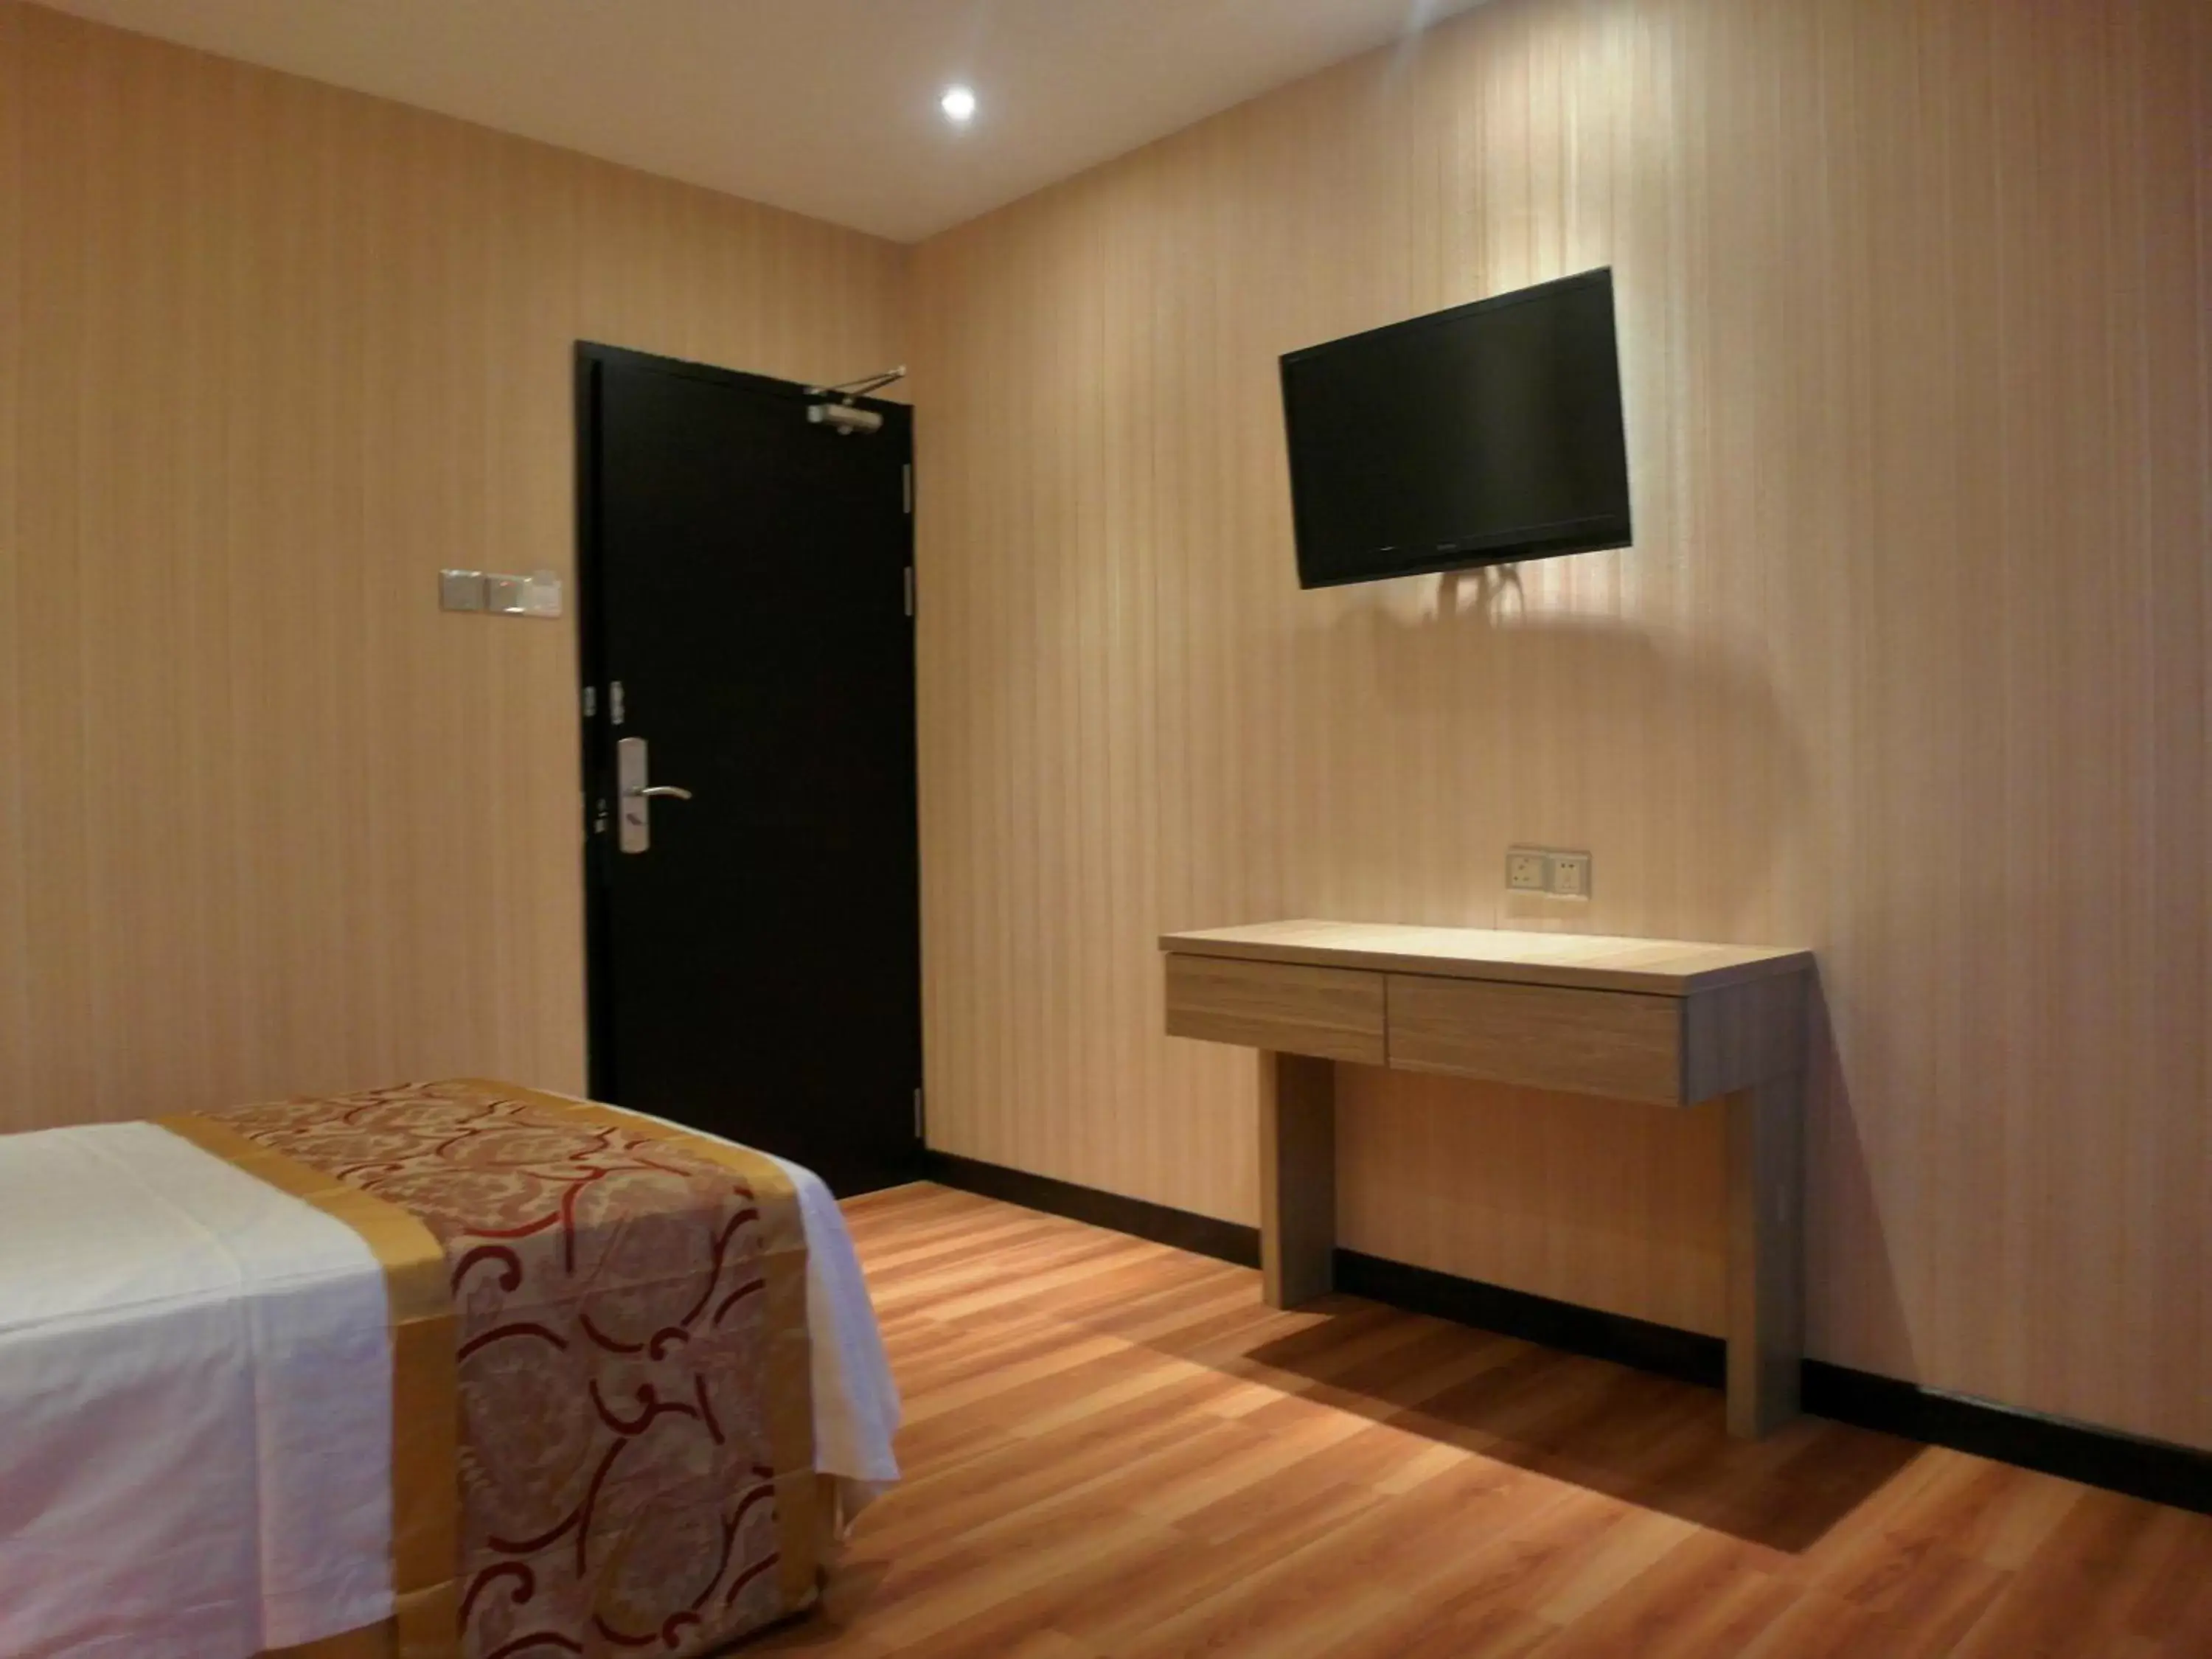 Bedroom, TV/Entertainment Center in Mandarin Hotel Kota Kinabalu